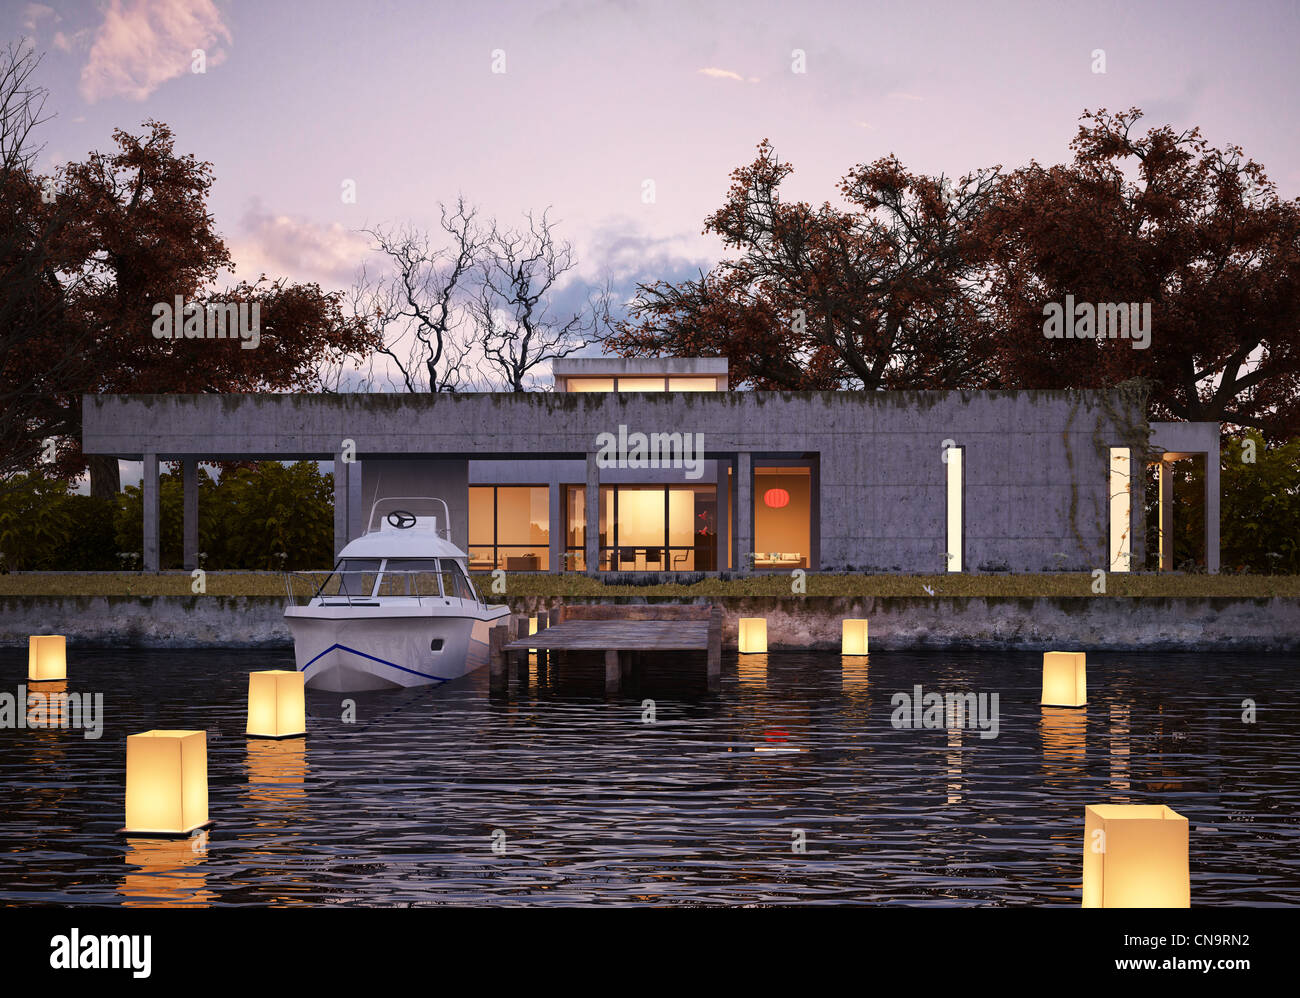 Maison moderne de luxe sur l'eau au coucher du soleil, avec l'examen par les pairs et yacht. Les feux lumineux flottant sur l'eau donnent une atmosphère spatiale. Banque D'Images